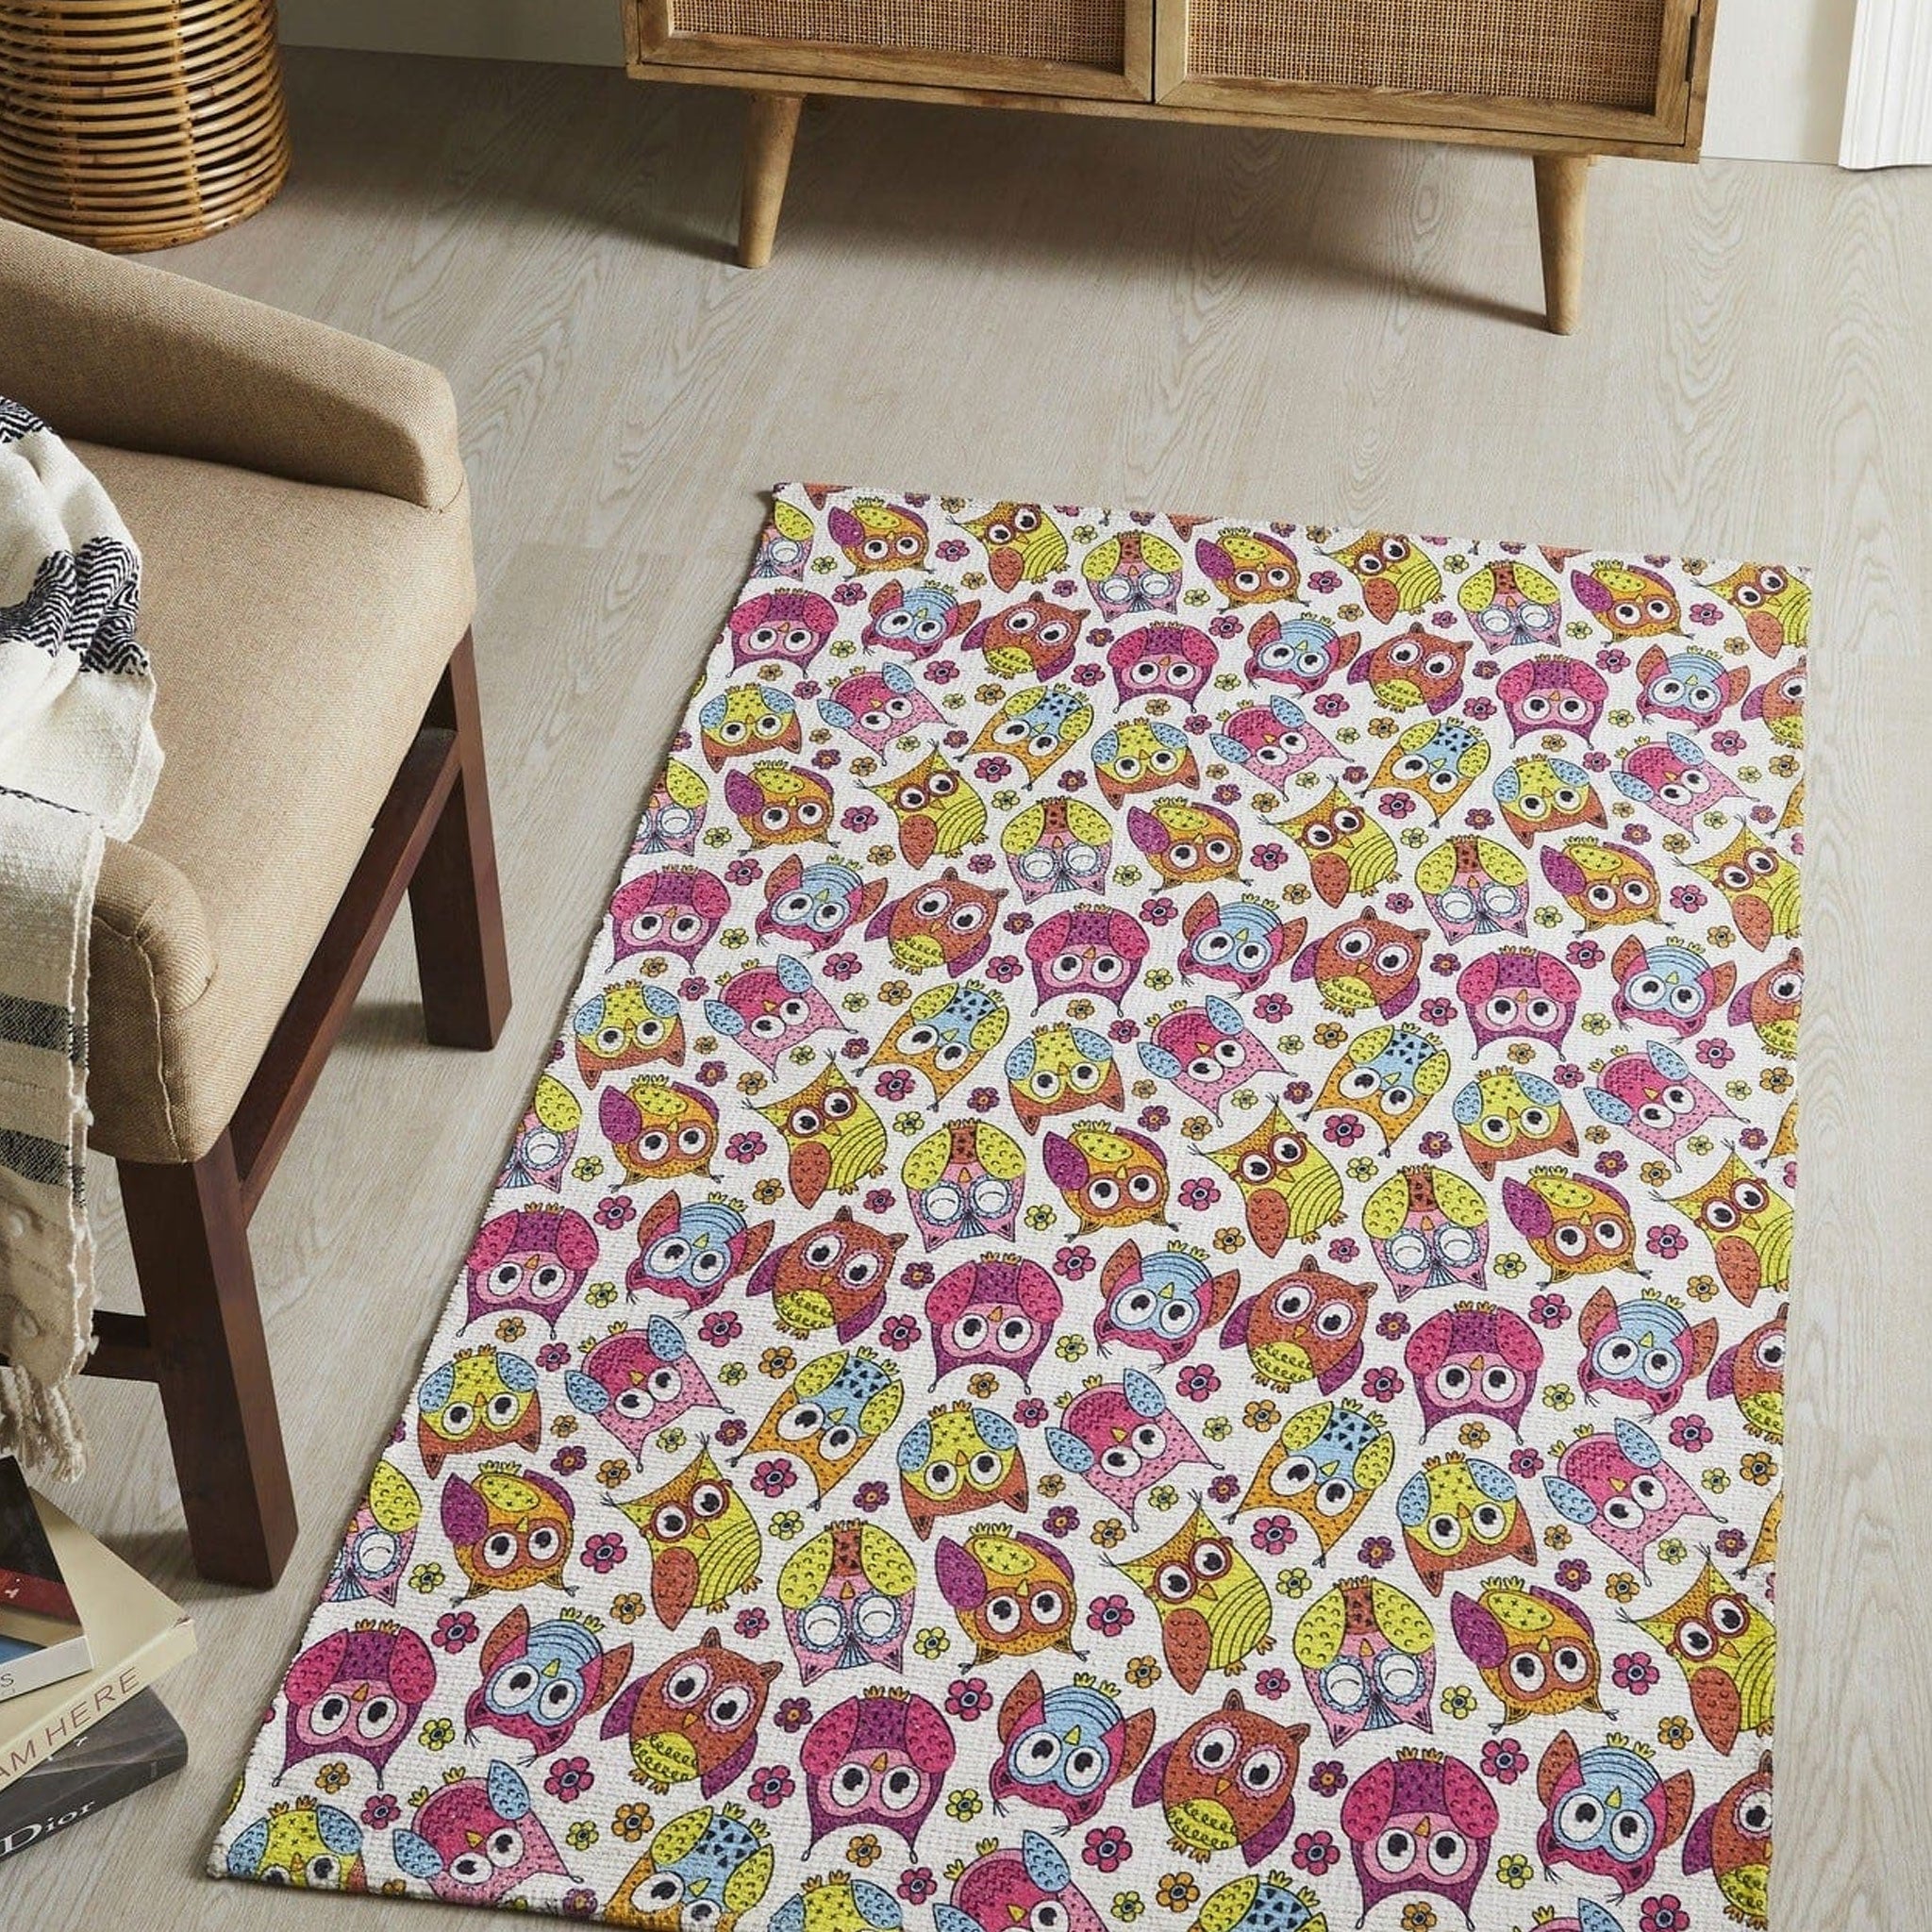 Mona B Printed Owl Kids Room Dhurrie Carpet Rug Runner Floor Mat for Living Room Bedroom: 3 X 5 Feet Multi Color - BR-306 (3660)